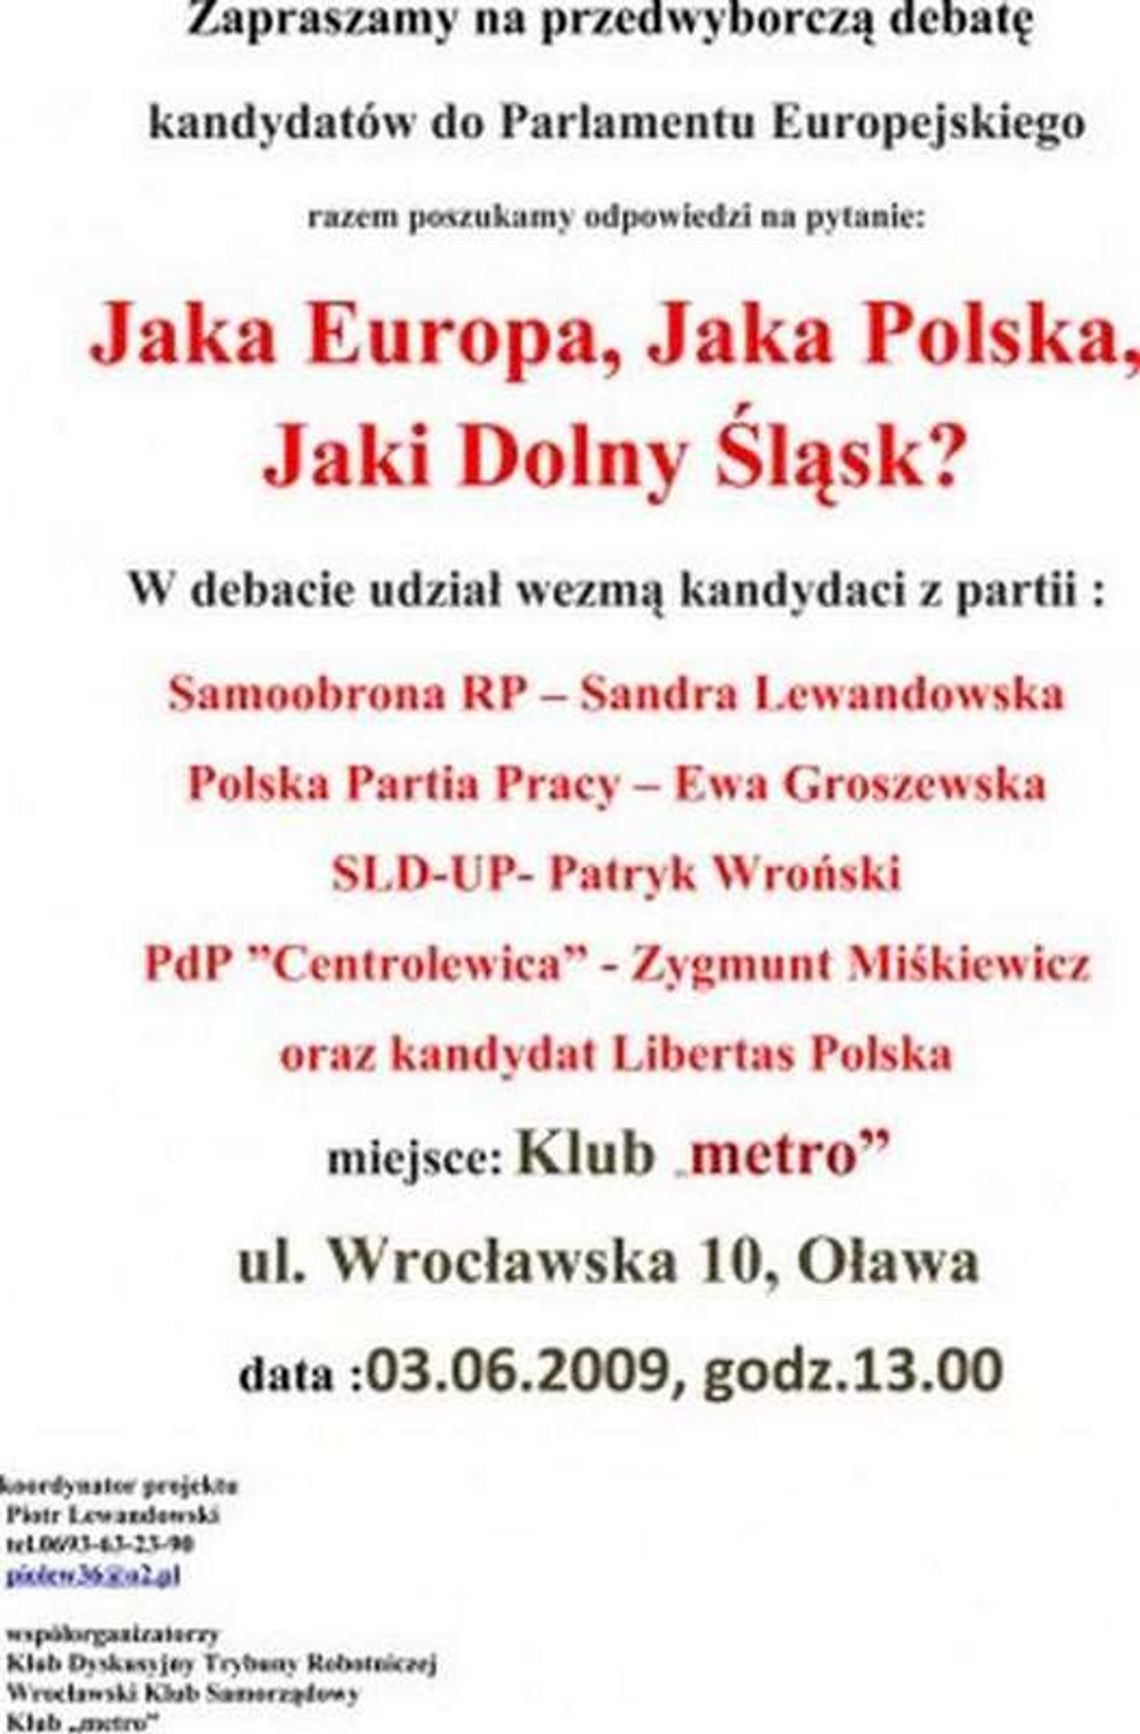 Jaka Europa, jaka Polska, jaki Dolny Śląsk - debata